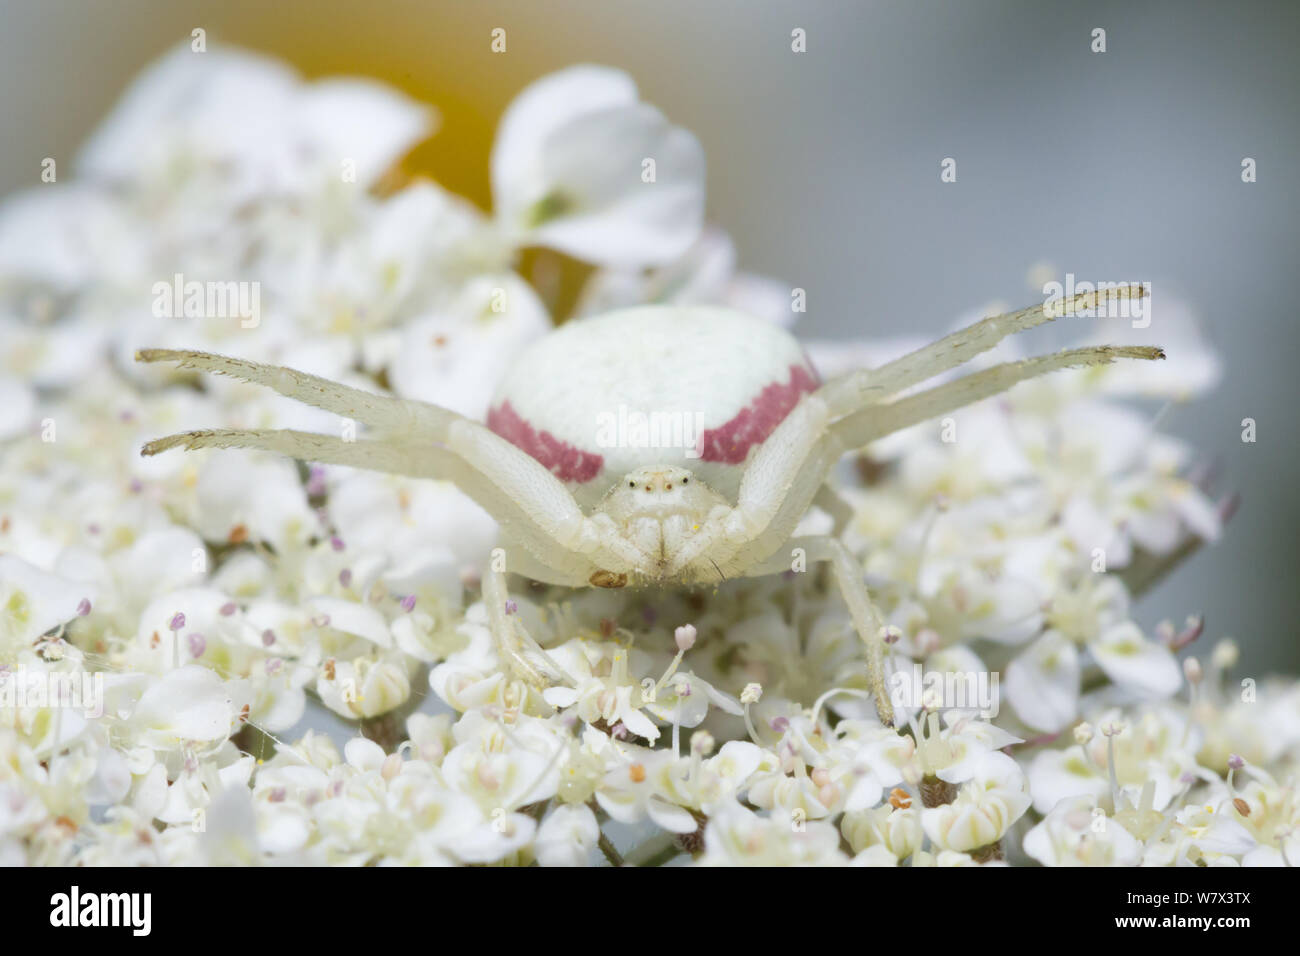 White form of Goldenrod Crab Spider (Misumenia vatia) camouflaged on umbellifer flowers waiting to ambush its prey. Devon, UK. June. Stock Photo